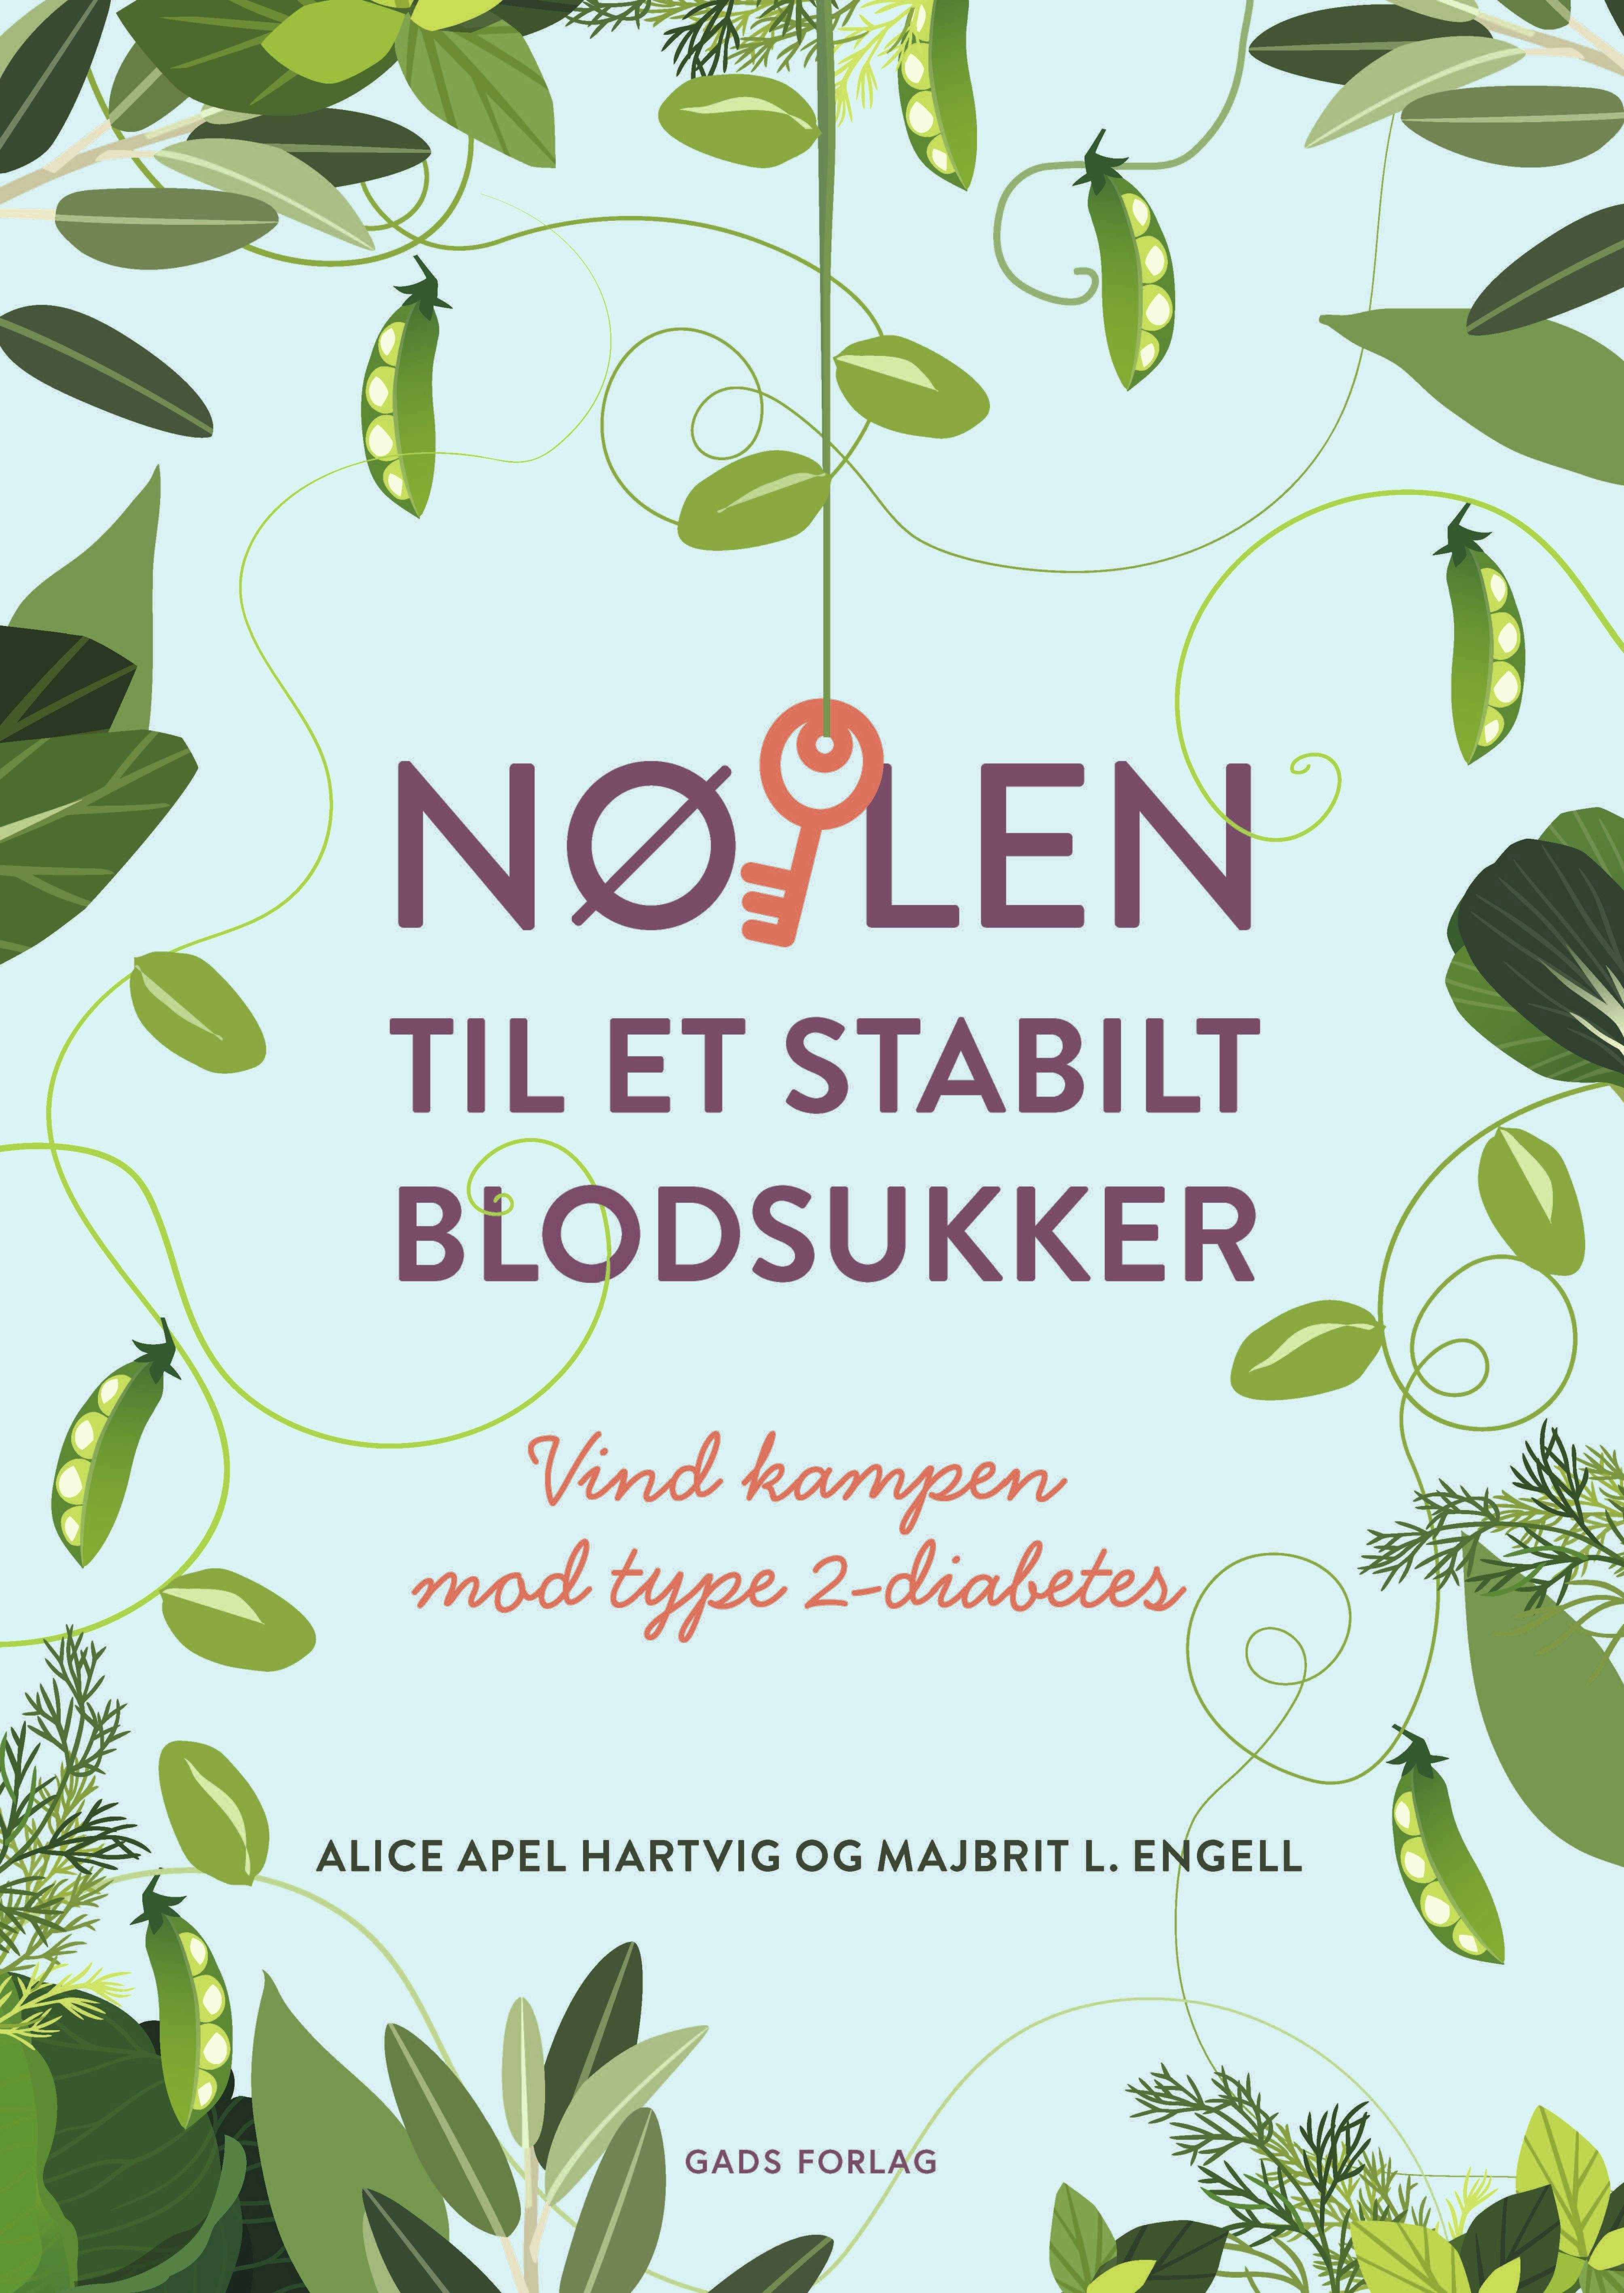 Forside af bogen ”Nøglen til et stabilt blodsukker – Vind kampen mod type 2-diabetes” af Majbritt L. Engell & Alice Apel Hartvig, Gads Forlag